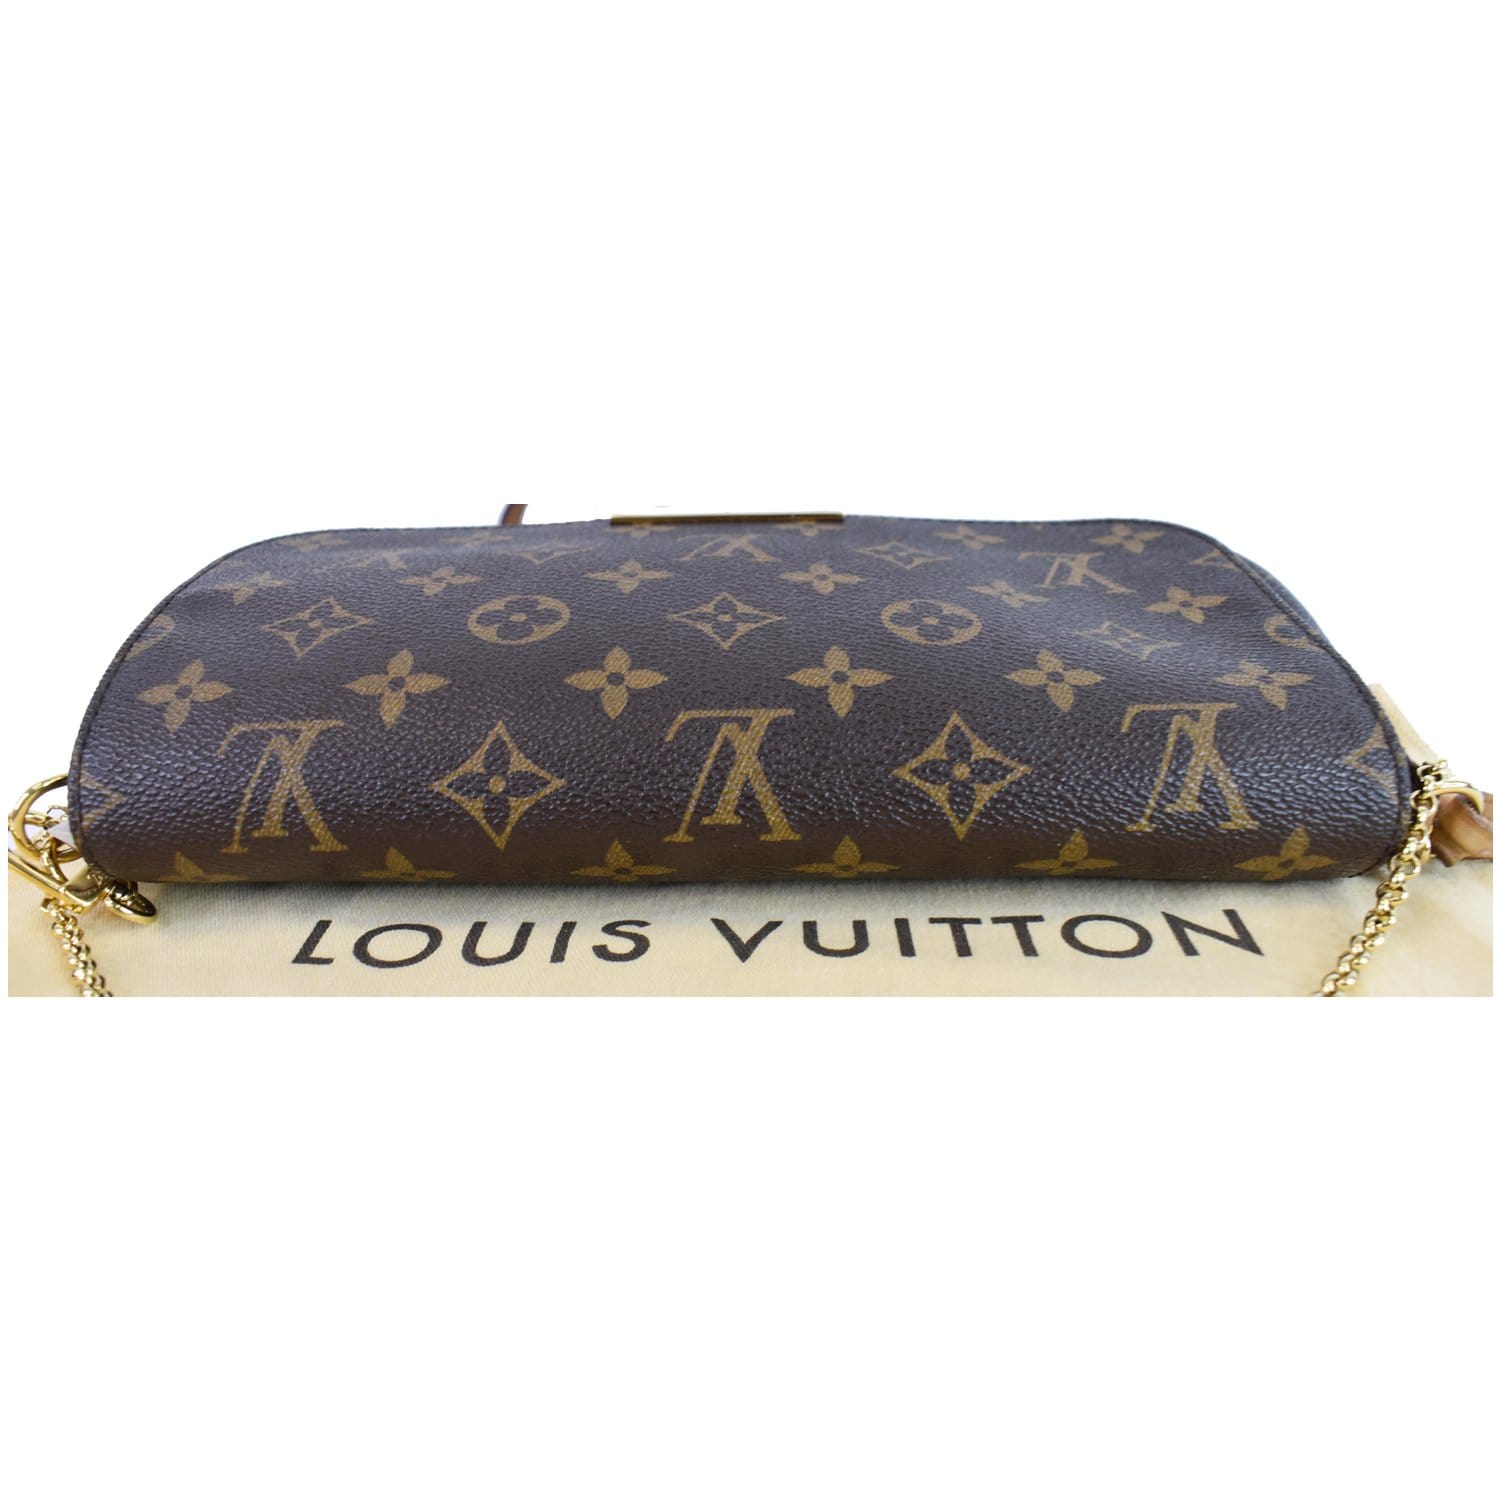 Louis Vuitton Favorite Mm 2017 Brown Damier Ébène Canvas Cross